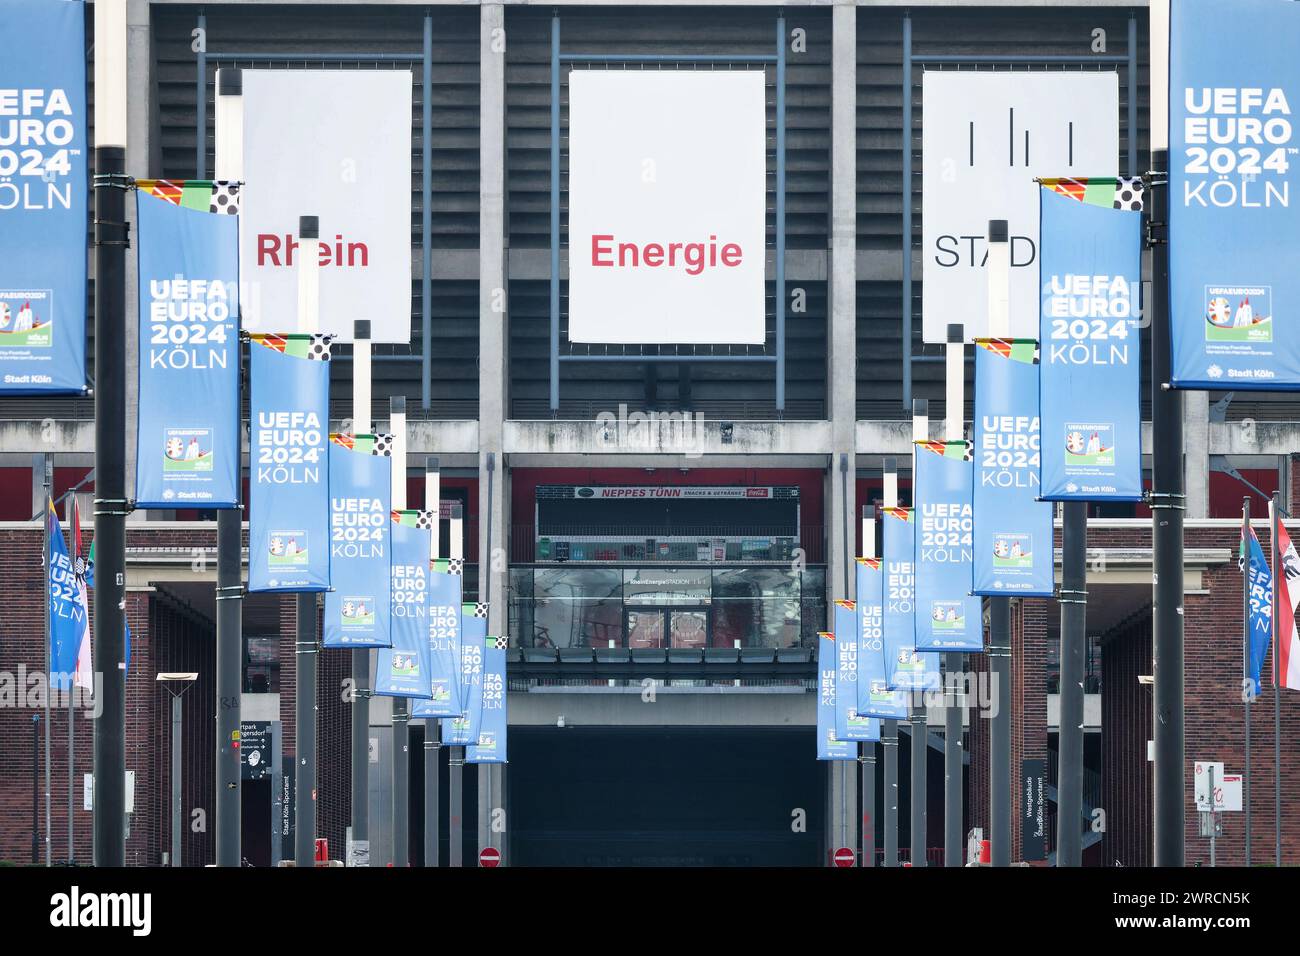 Köln Deutschland 06. März 2024: Viele Fahnen der uefa Euro 2024 köln am Eingang zum rhein Energie Stadion köln Stockfoto